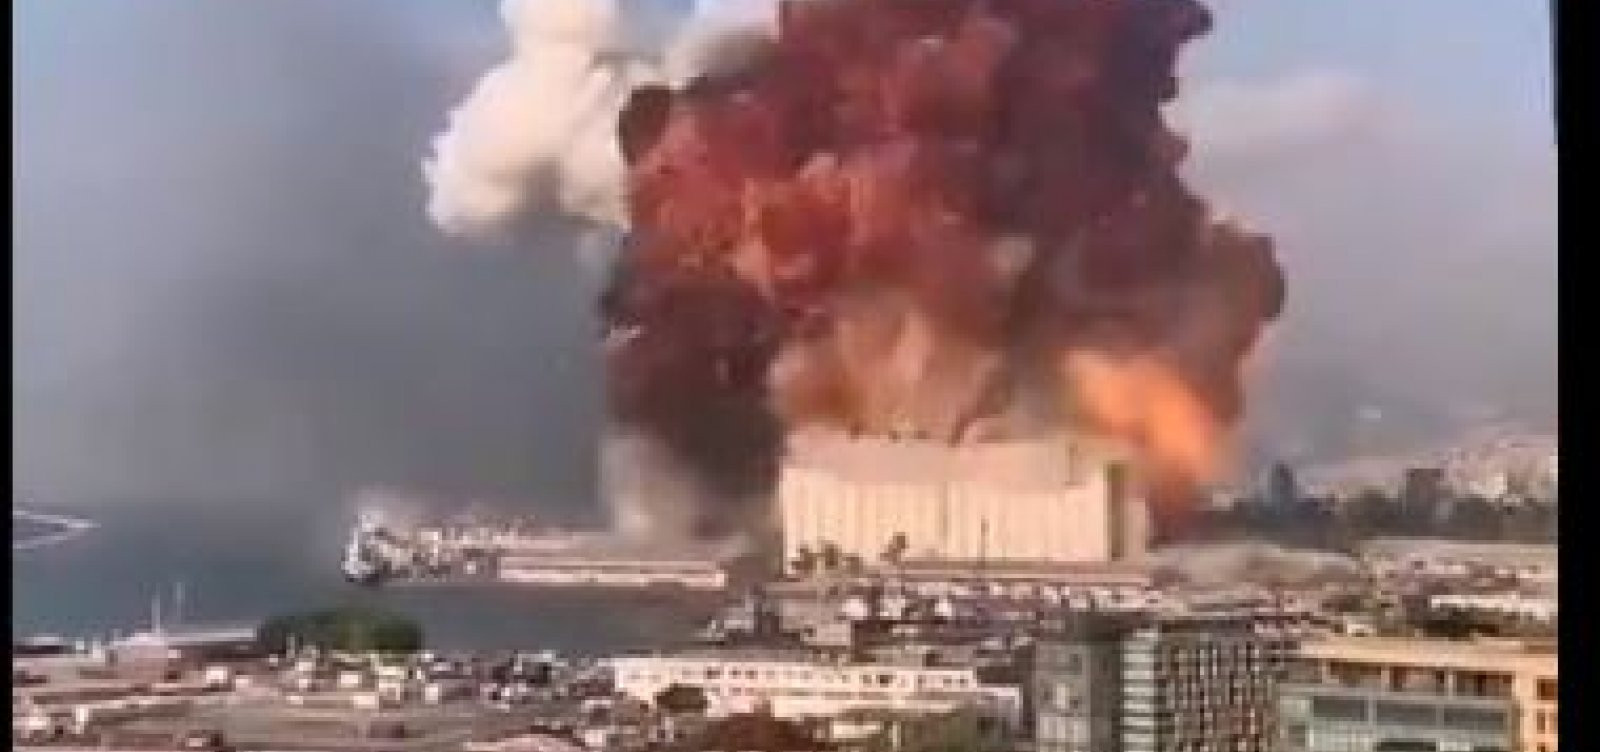 Explosão em Beirute: ‘Inaceitável’ – 3 mil toneladas de fertilizante explosivo